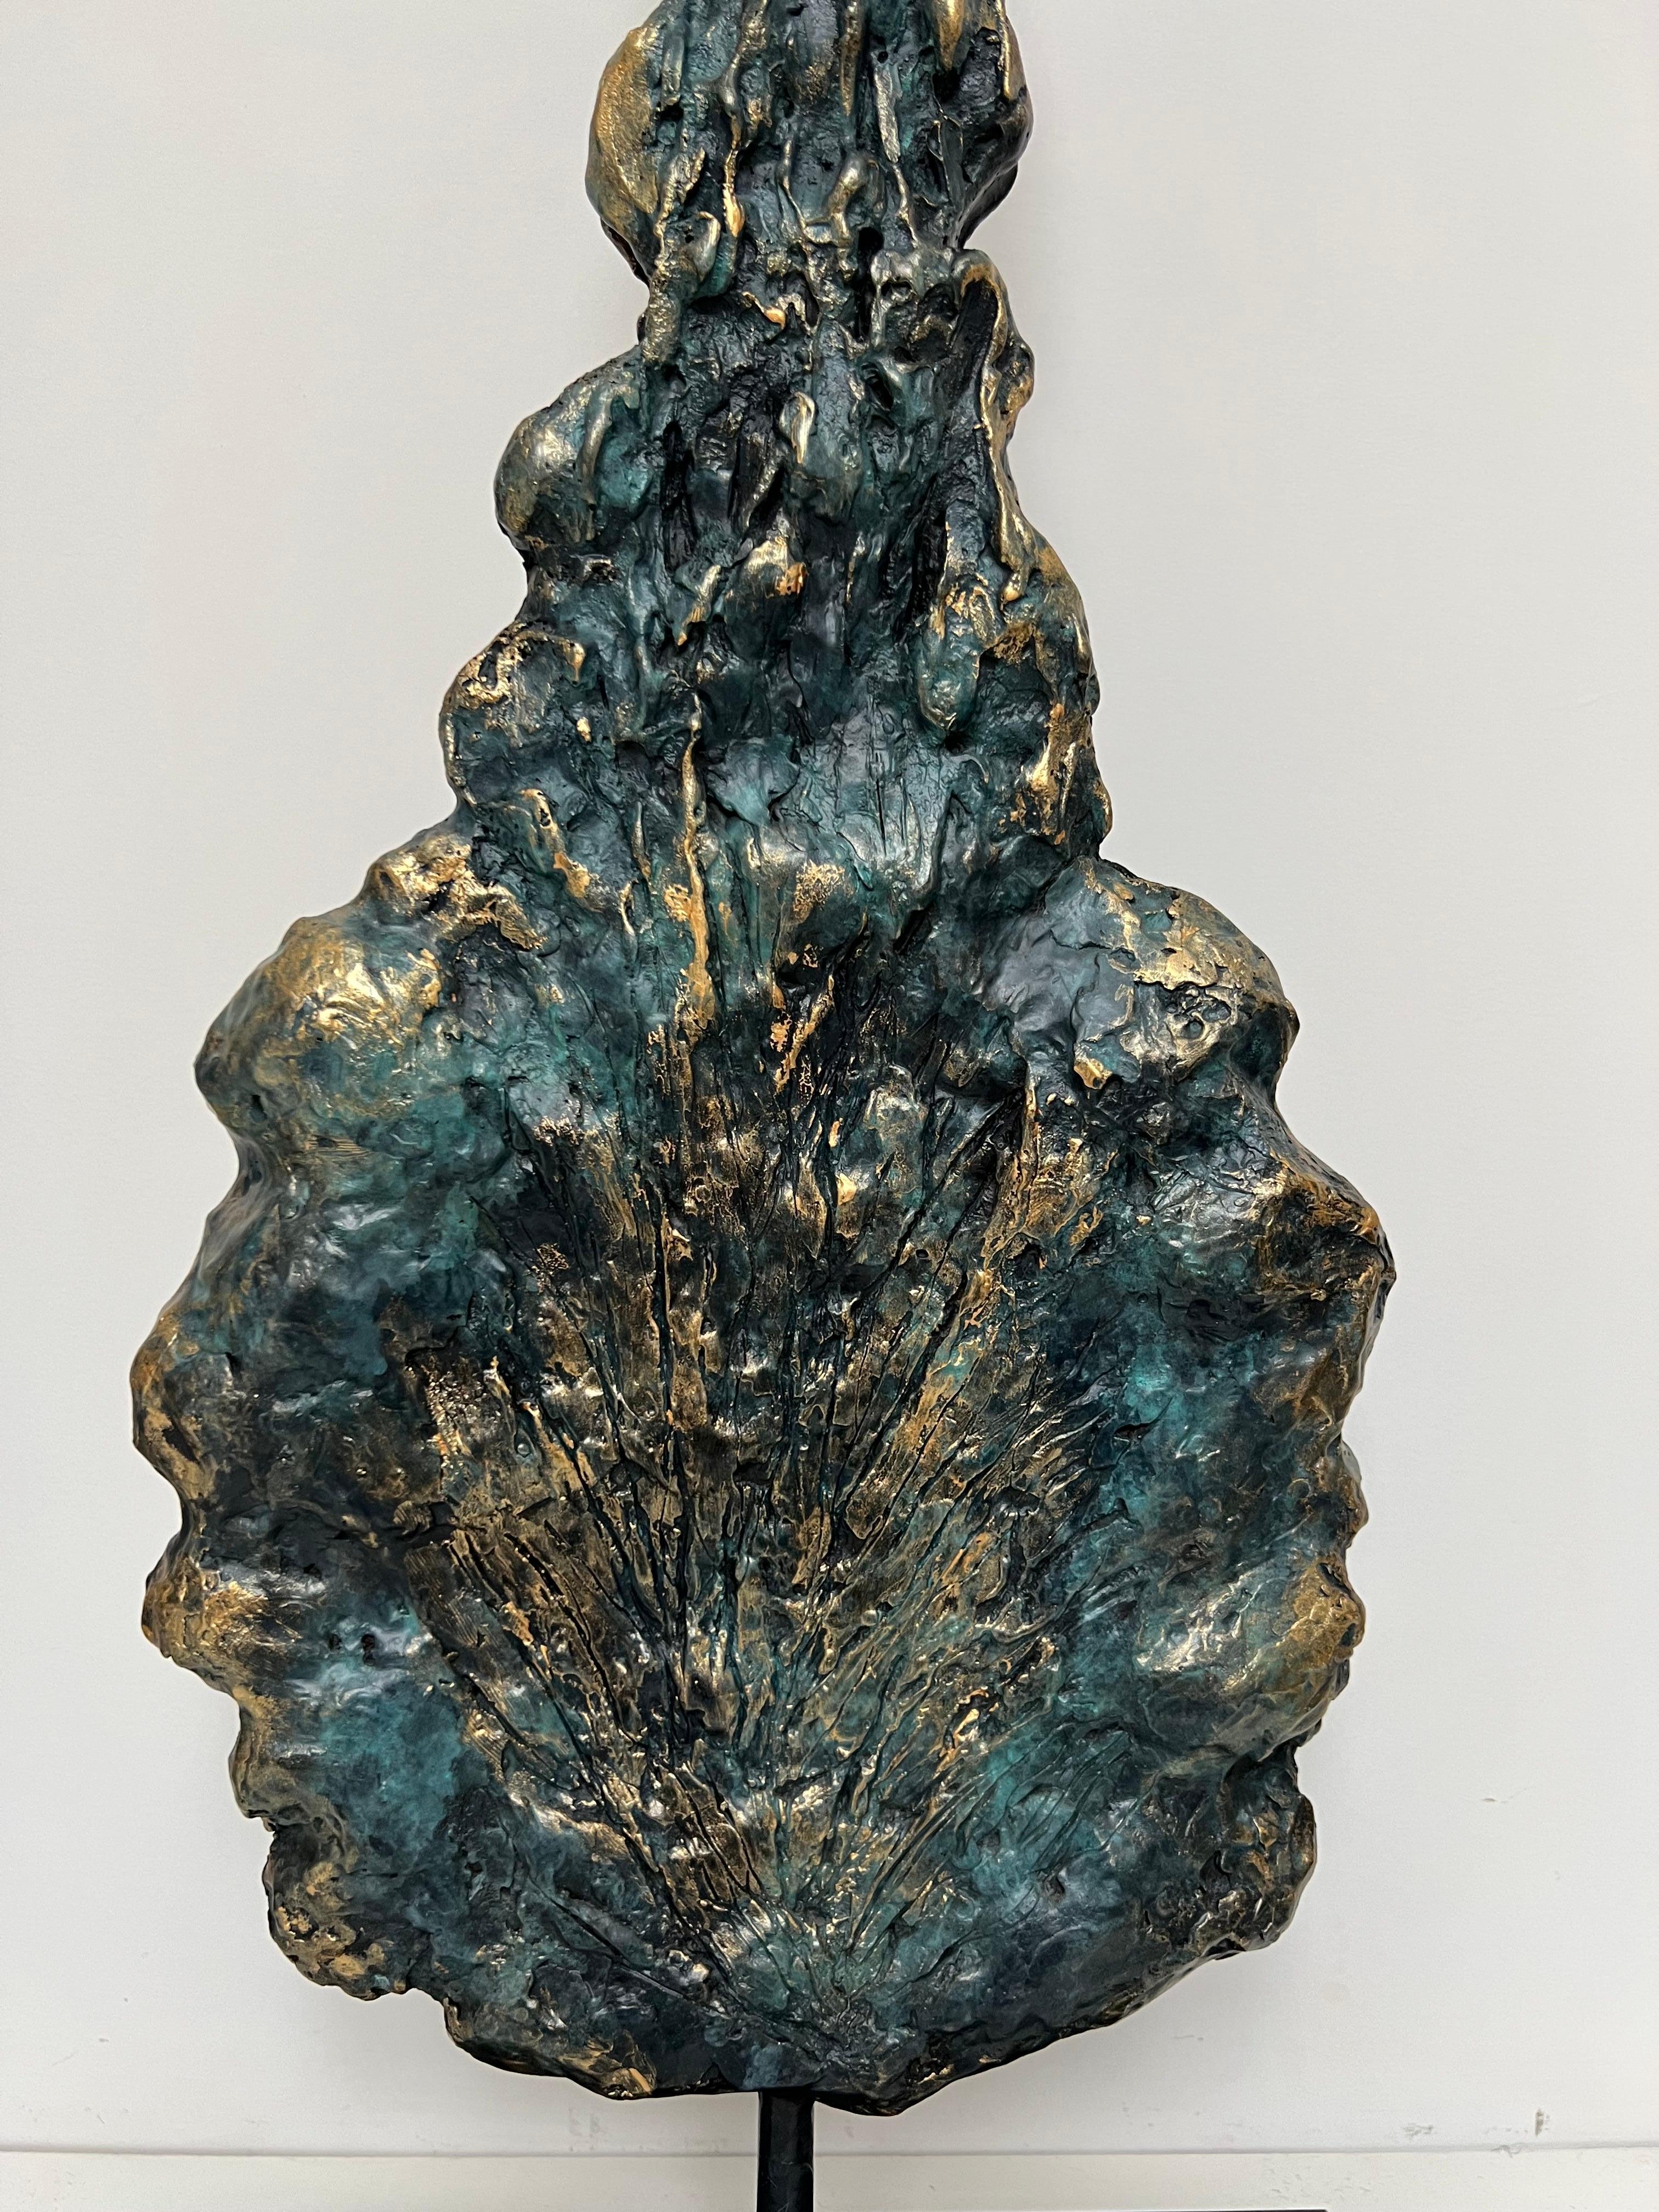 Einzigartige Skulpturen von Kiefern, handgefertigt, geformt und in Bronze gegossen.
Inspiriert von den hohen Pinienbäumen, die die sanften Hügel der mediterranen Landschaft säumen, ist dieses Jewell-Paar aus substanziellen Skulpturen in aufwändiger